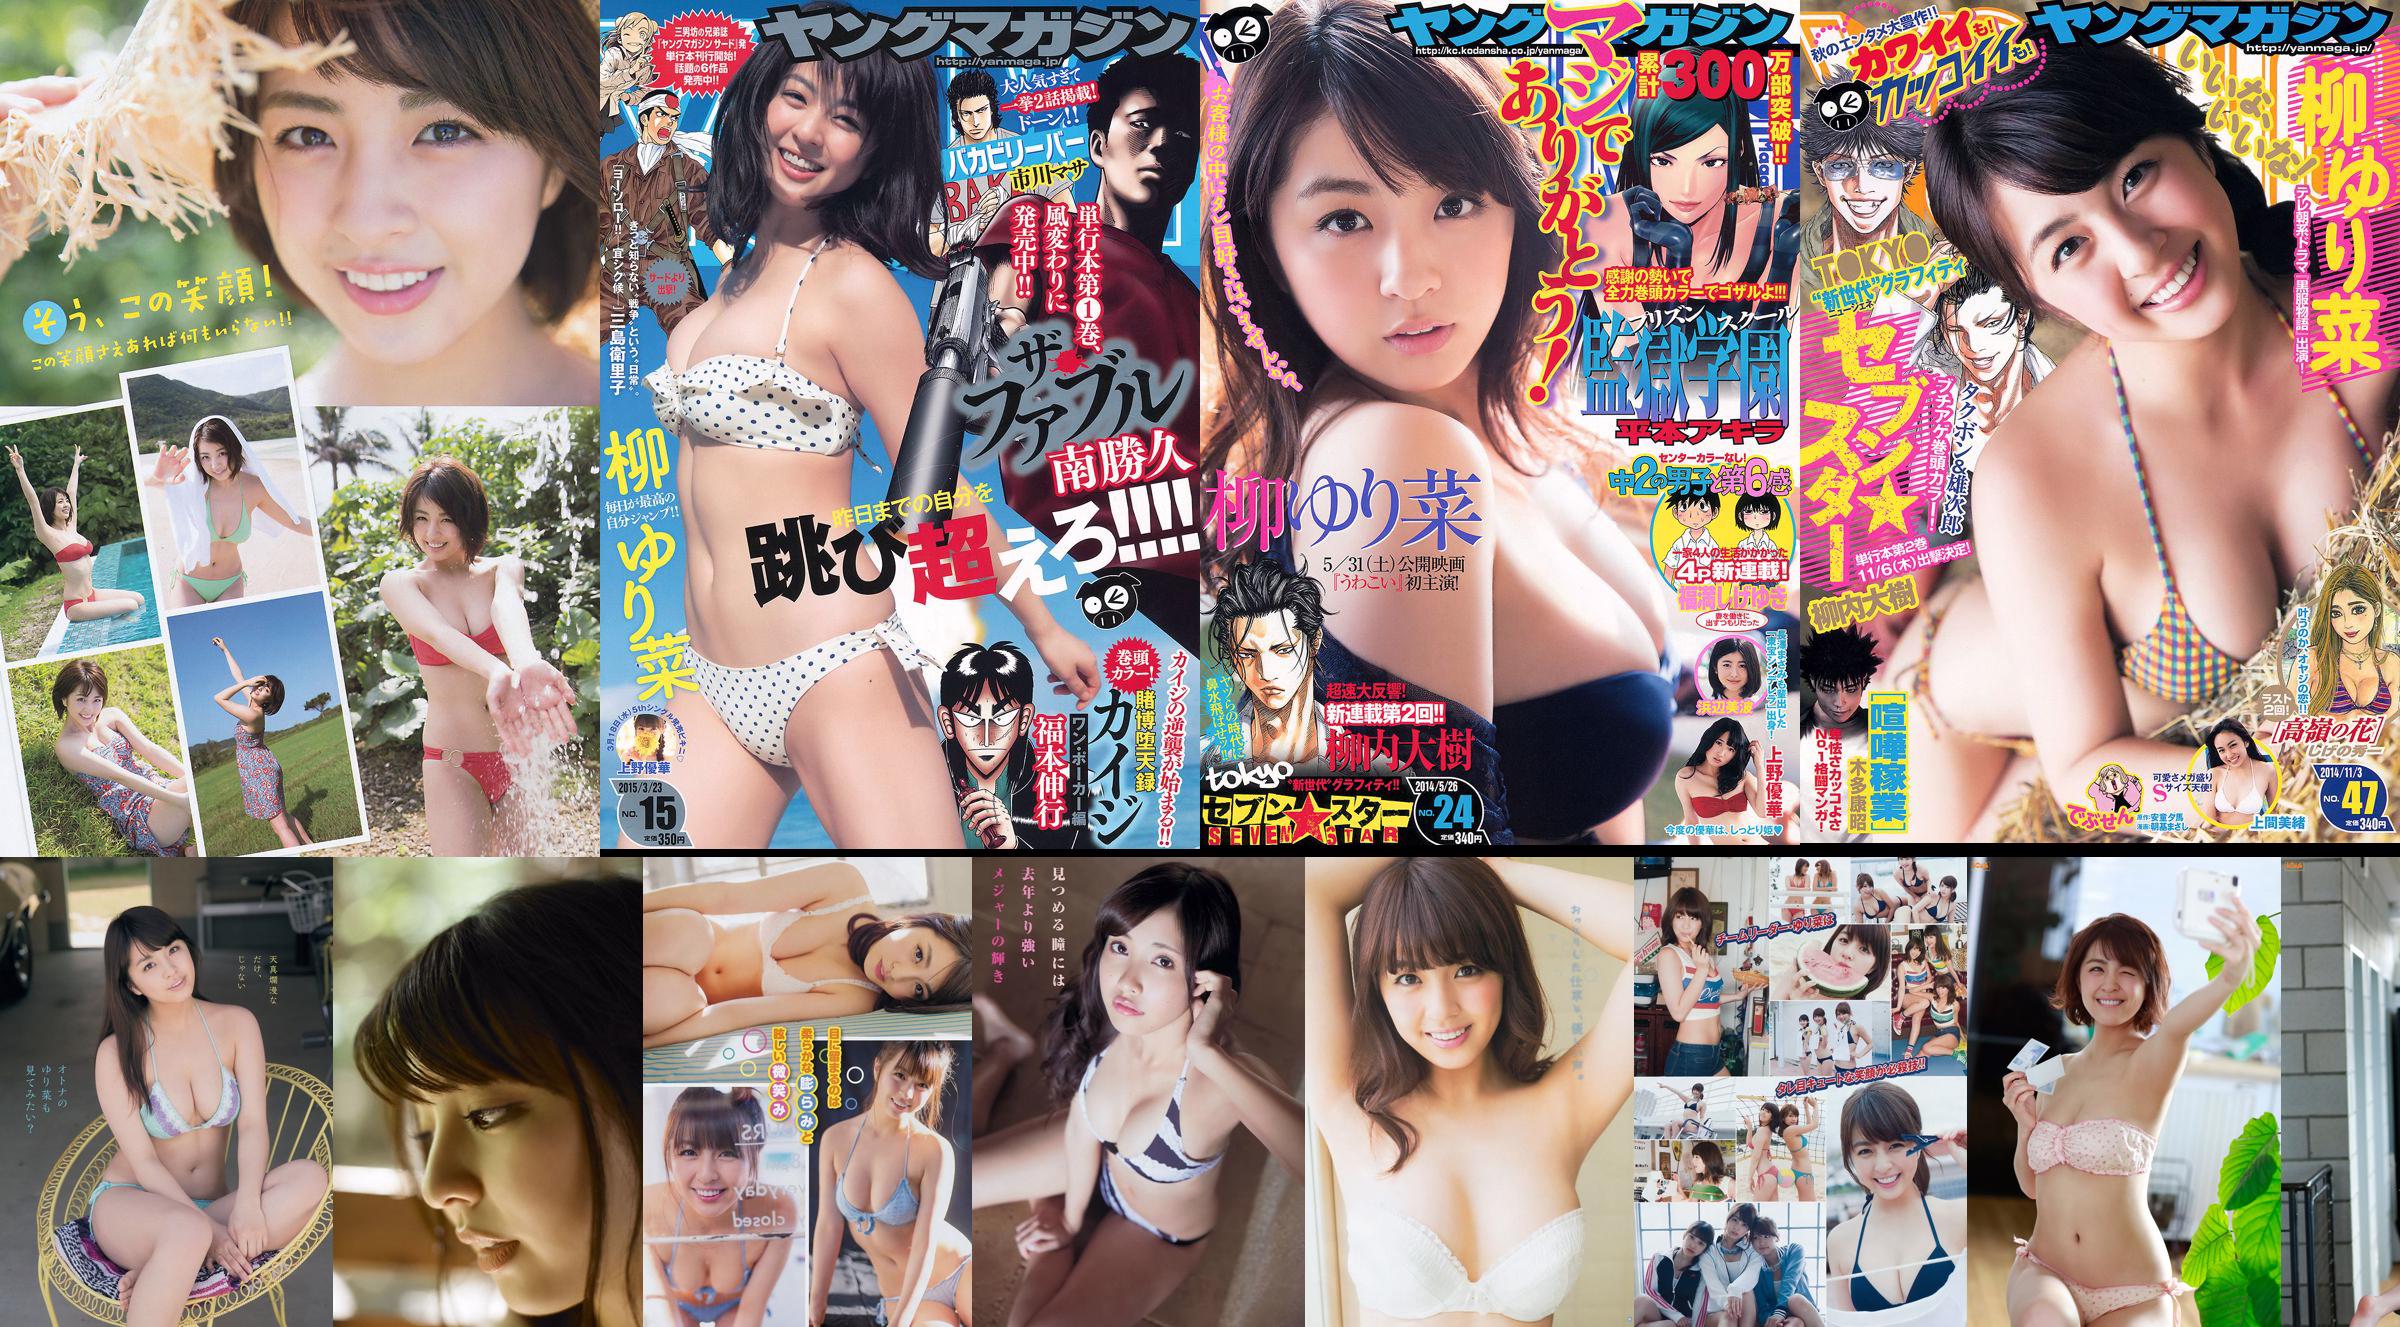 [FLASH] Yurina Yanagi Kyoko Fukada Naoko Kawai Tomomi Kahara 2015.08.18-25 Ảnh No.dcb3f7 Trang 1